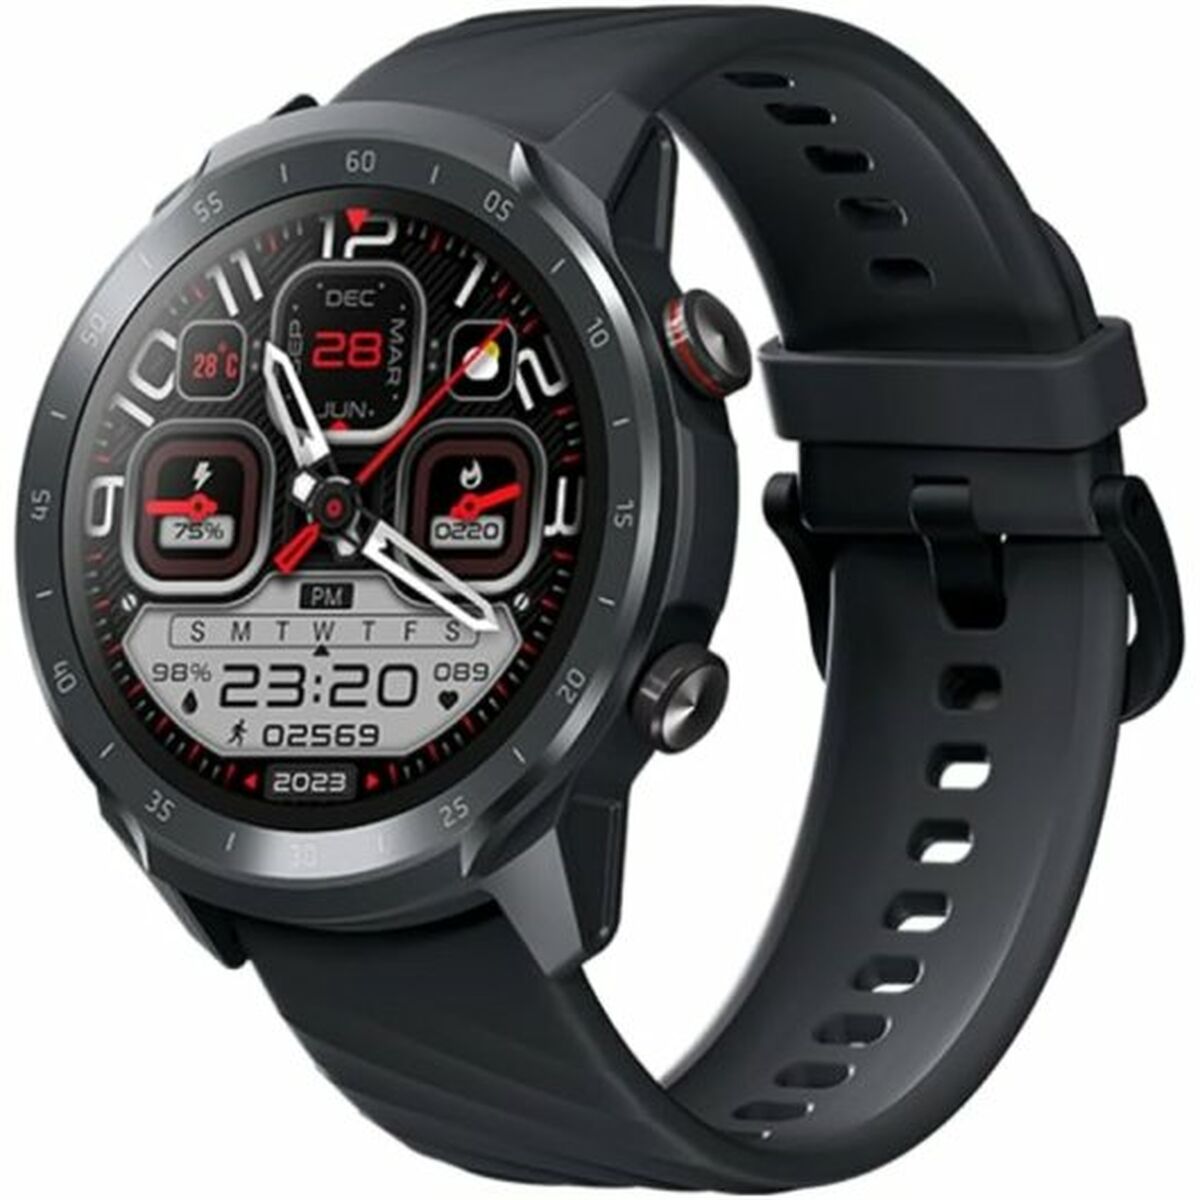 Kaufe Smartwatch Mibro A2 XPAW015 Schwarz bei AWK Flagship um € 66.00